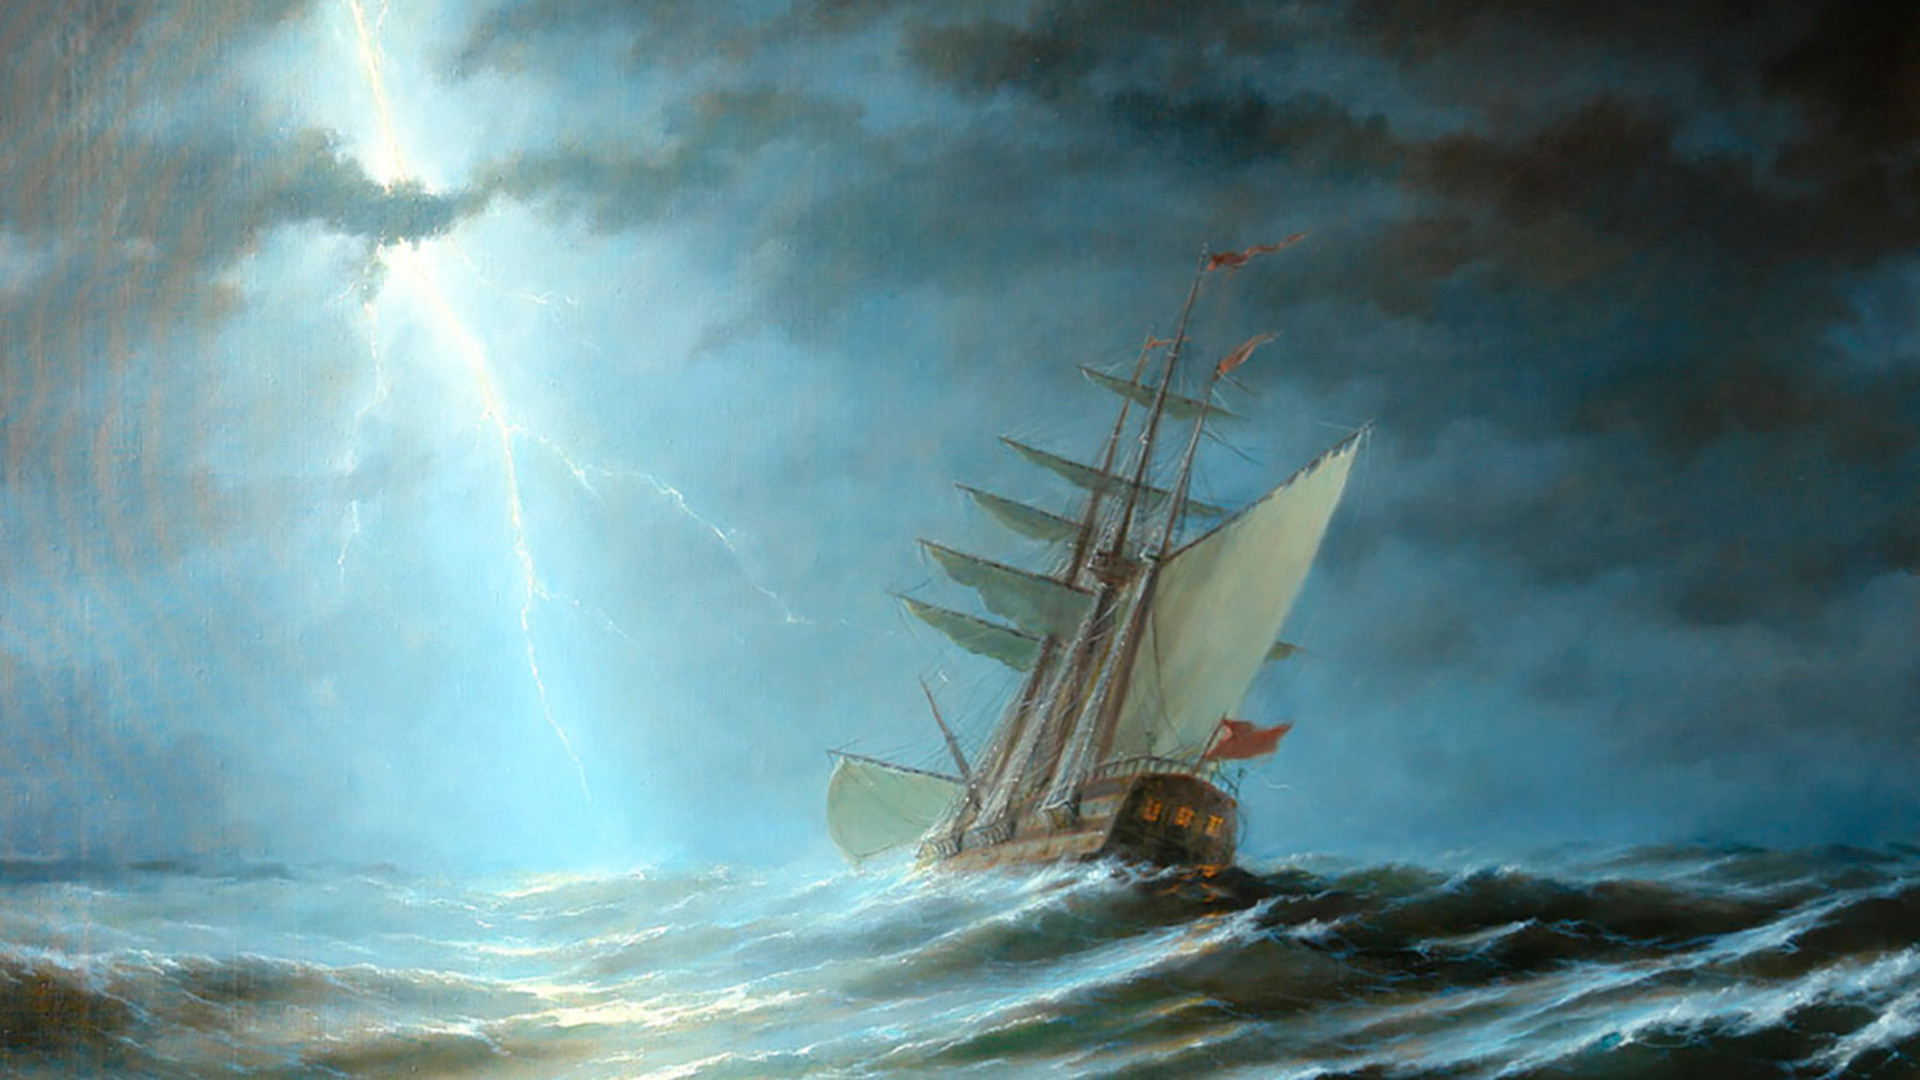 枚の海を描いたロシアの絵画 ロシア ビヨンド